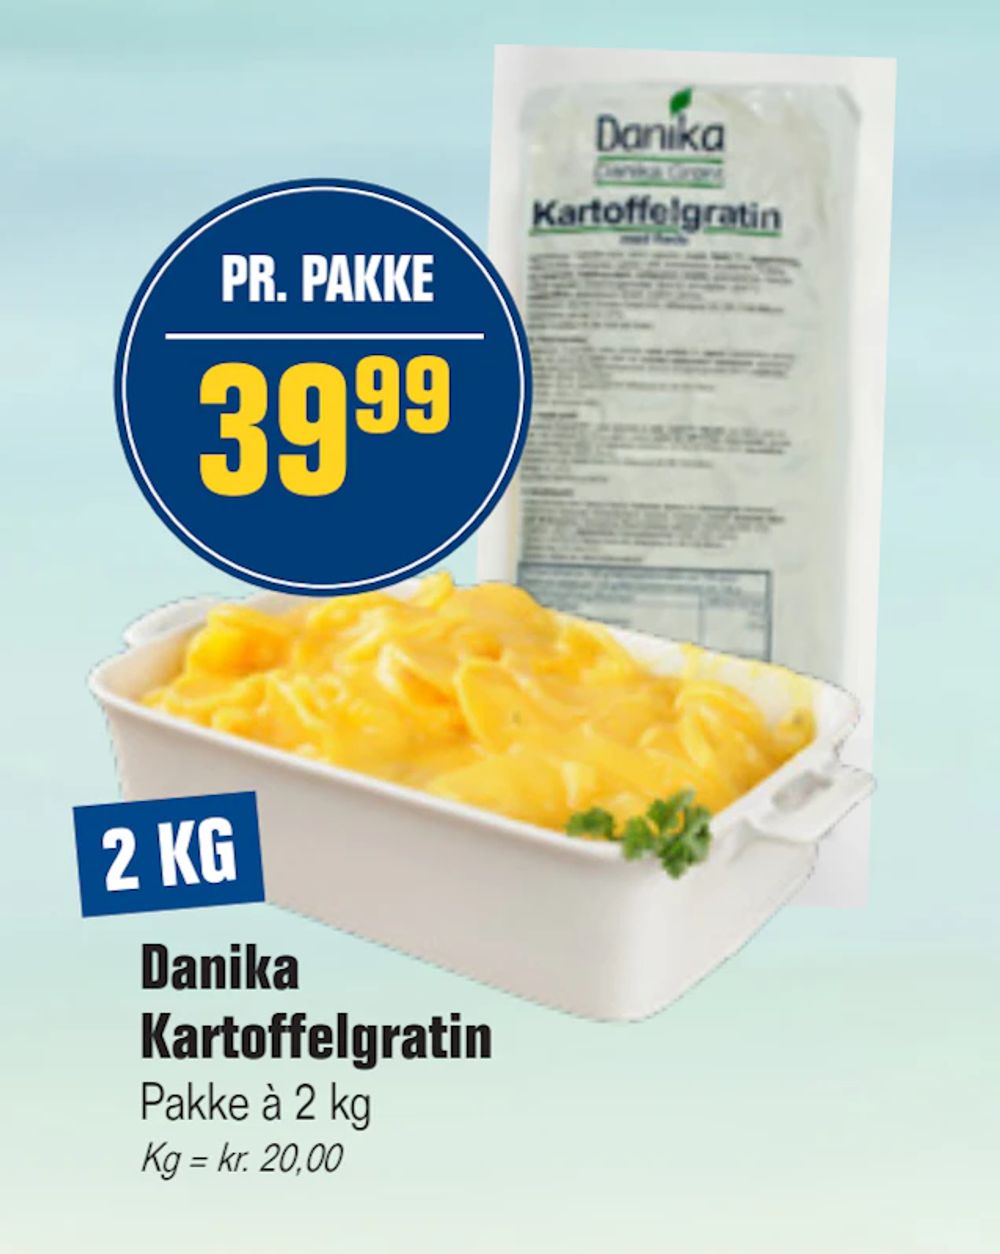 Tilbud på Danika Kartoffelgratin fra Otto Duborg til 39,99 kr.